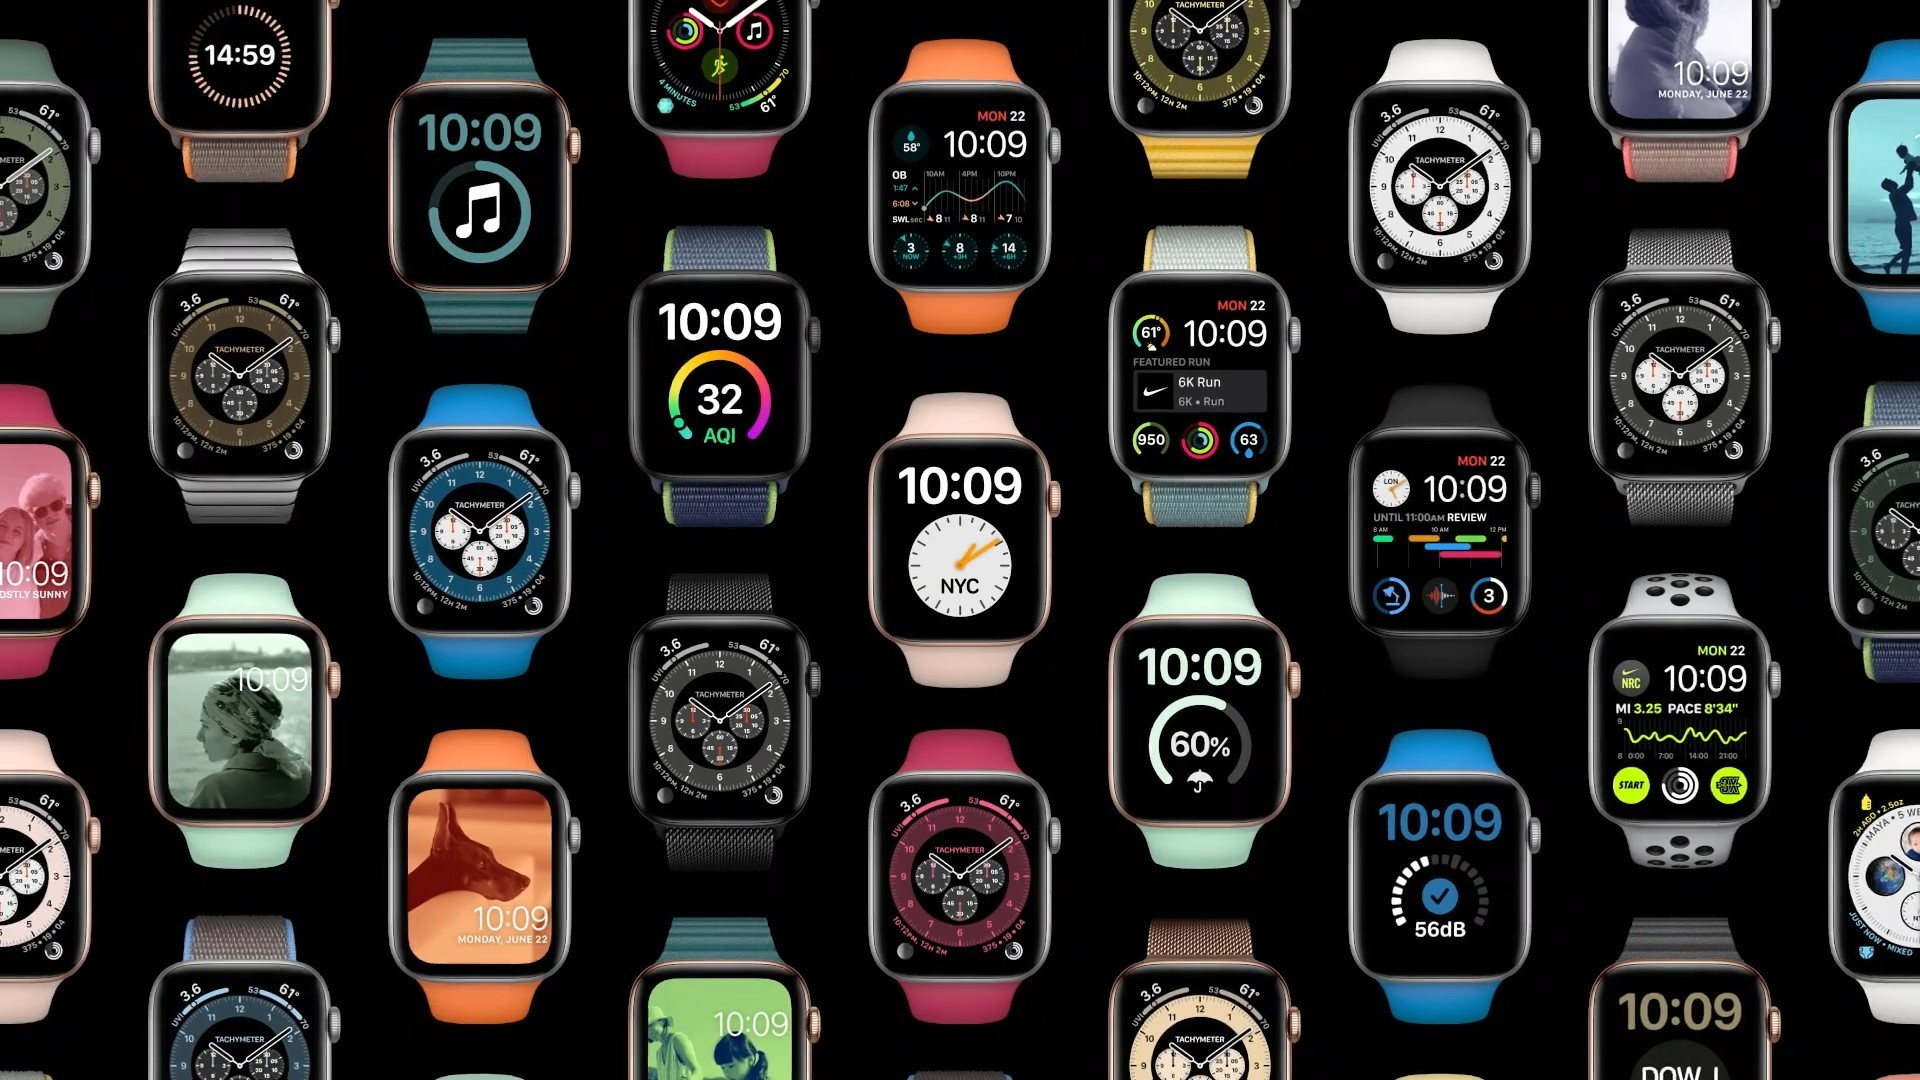 Купить Apple Watch